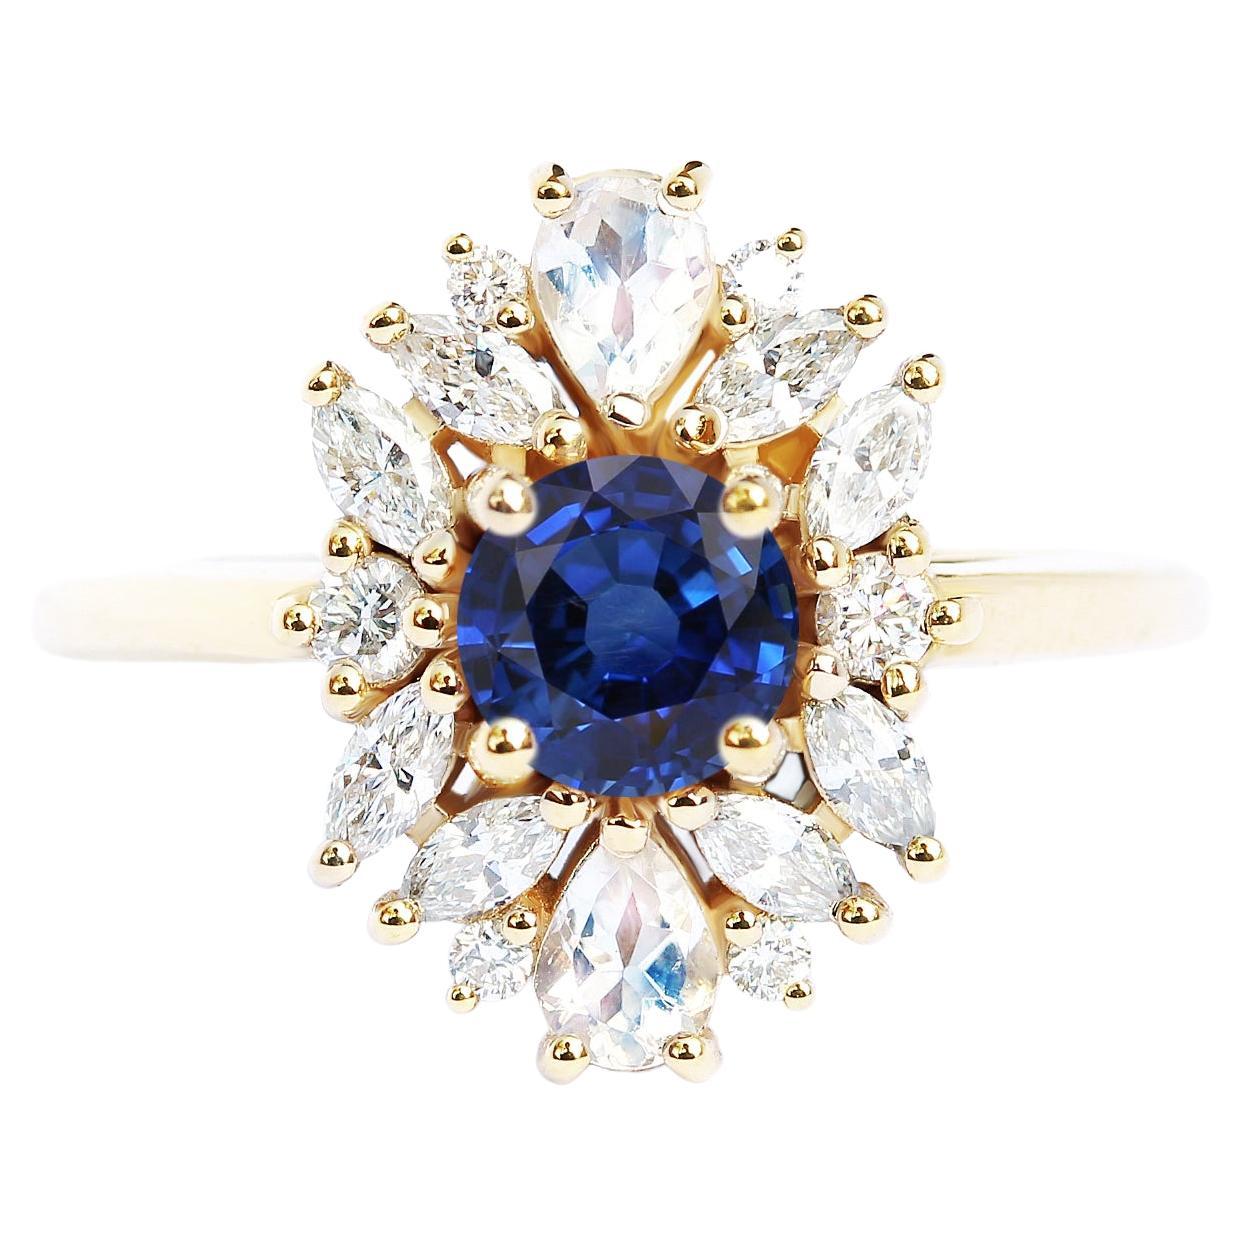 Blue Sapphire Cluster Unique Engagement Ring, Alternative Bride "Odisea" For Sale